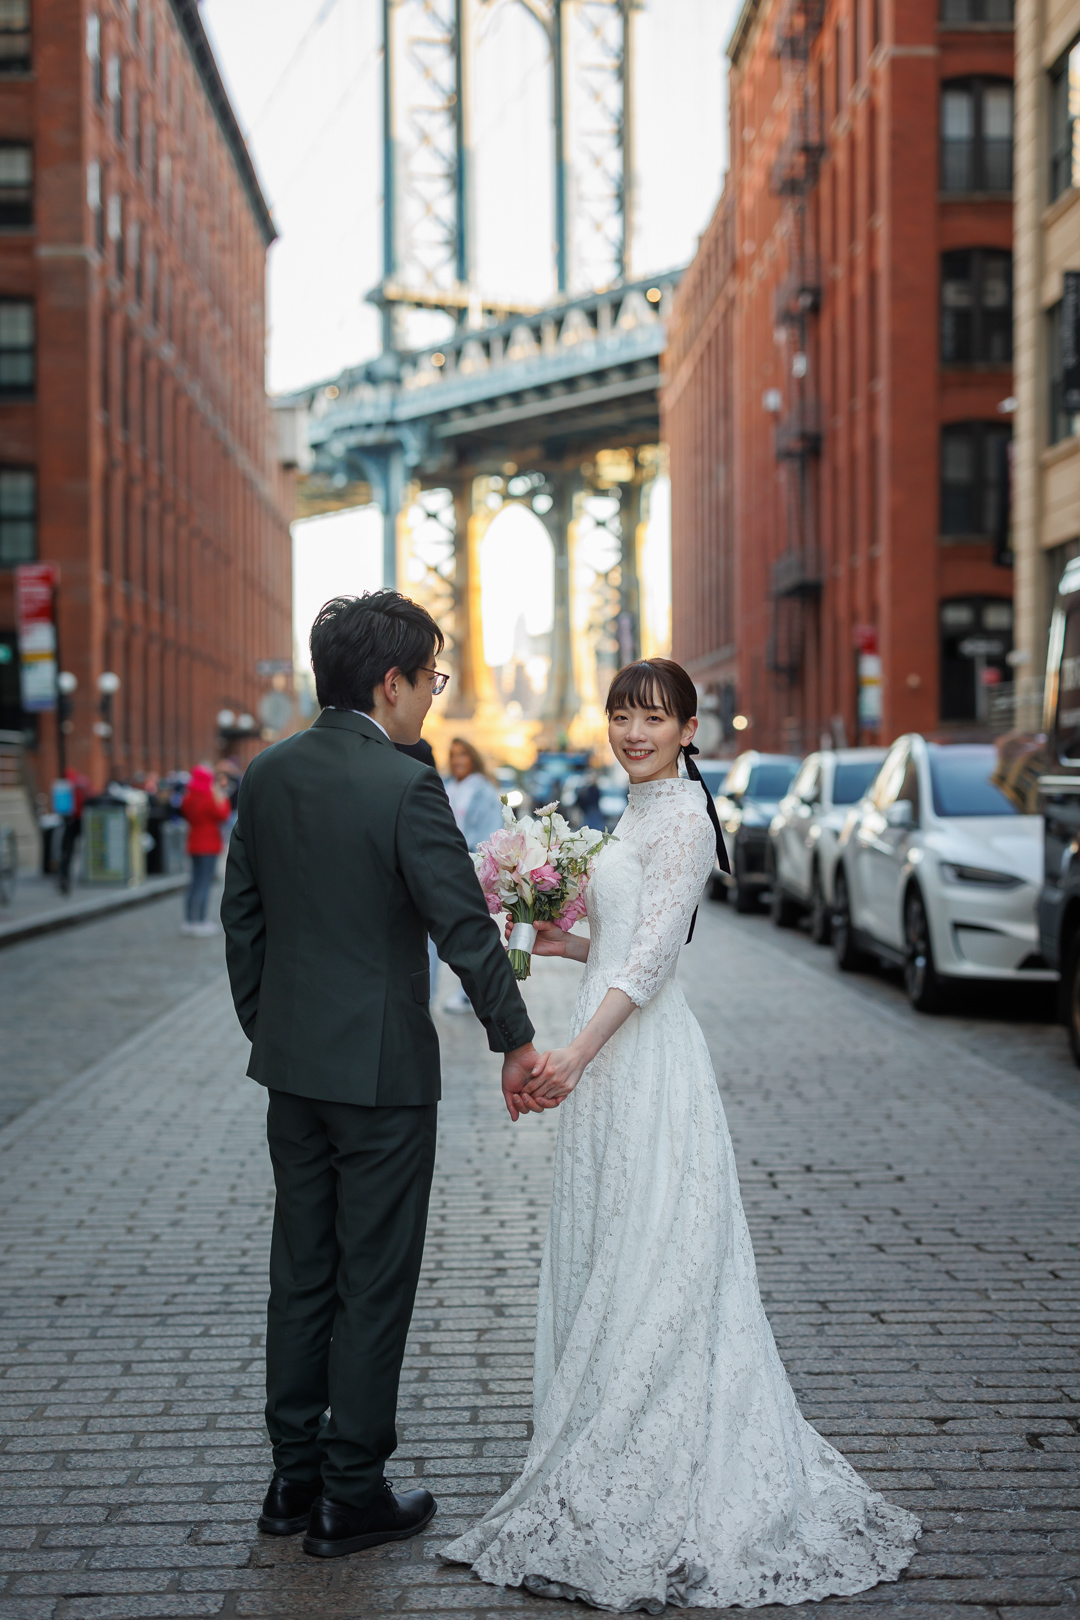 アメリカニューヨークの前撮り/フォトウェディング/DUMBOエリアのワシントンストリートに立つ花嫁と花婿。